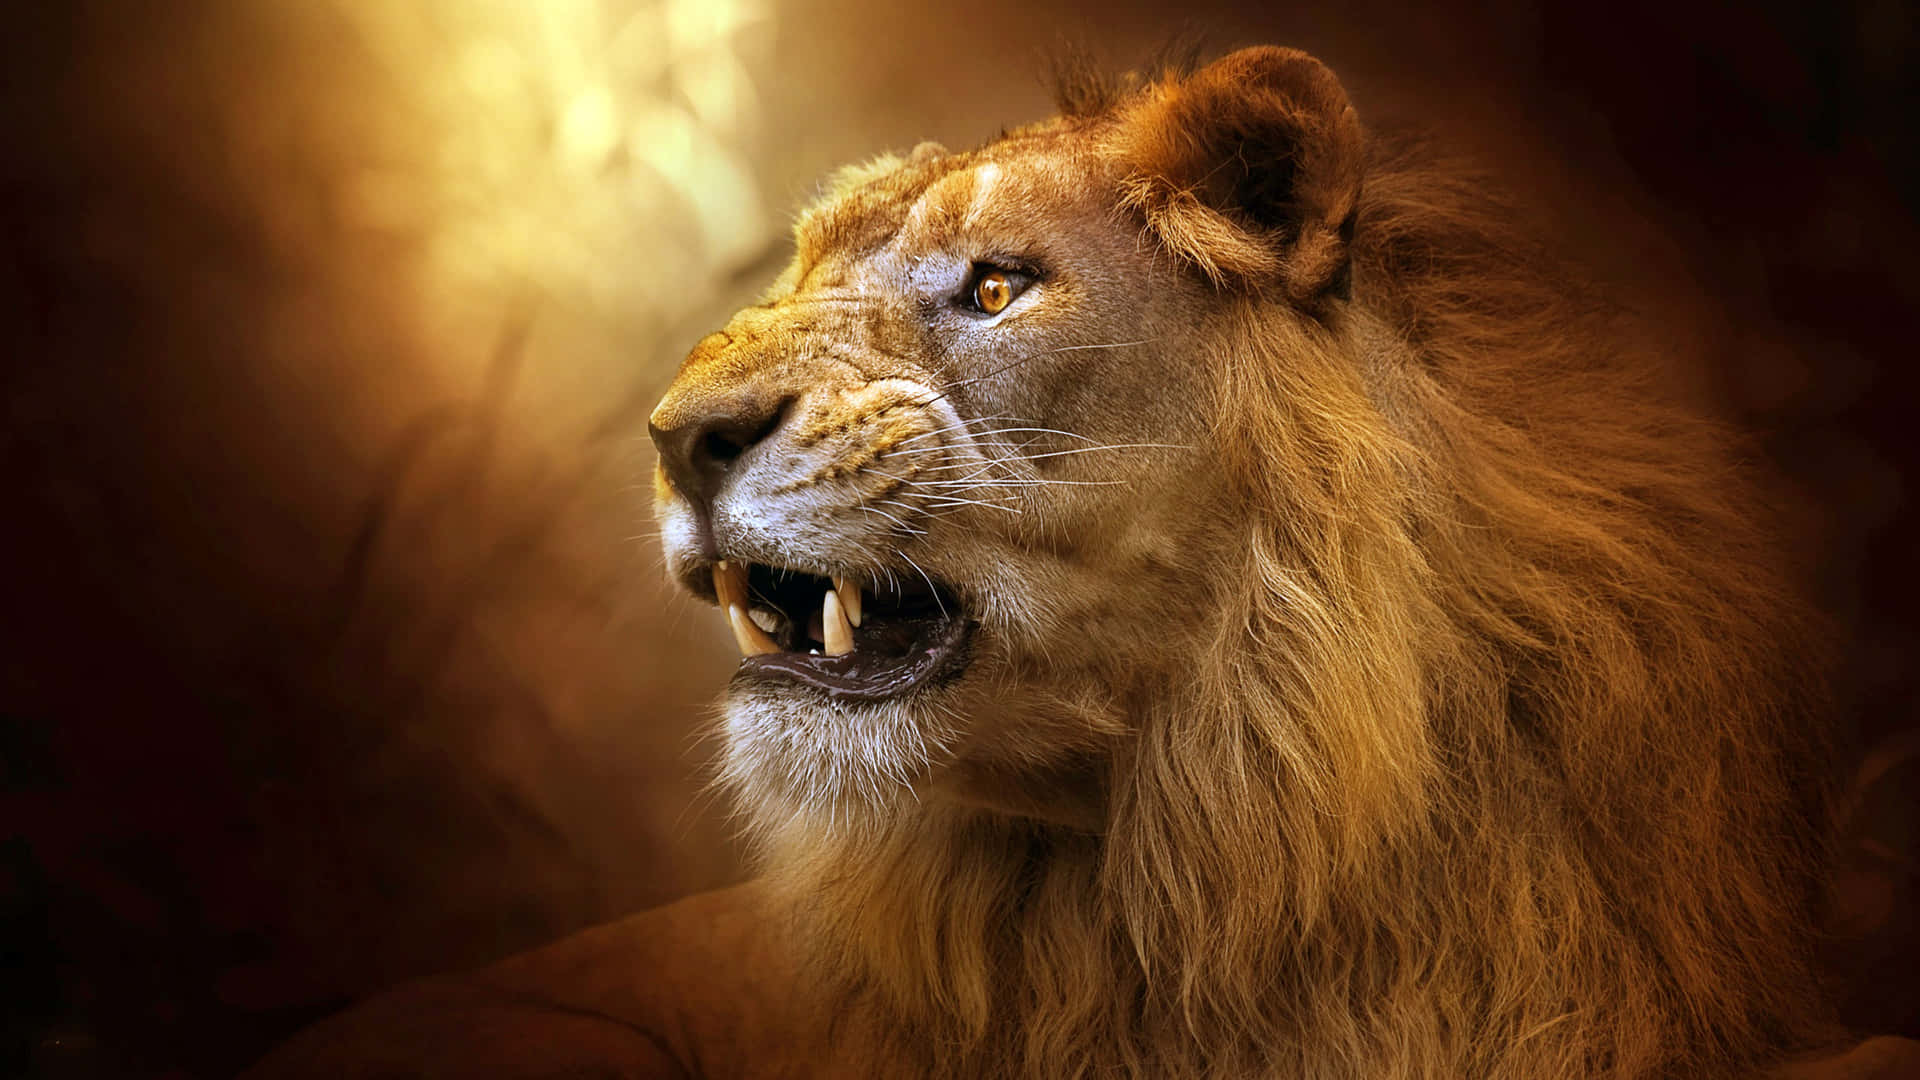 Male Lion's Roar (Blue Tone) Mural - Jim Zuckerman - Murals Your Way